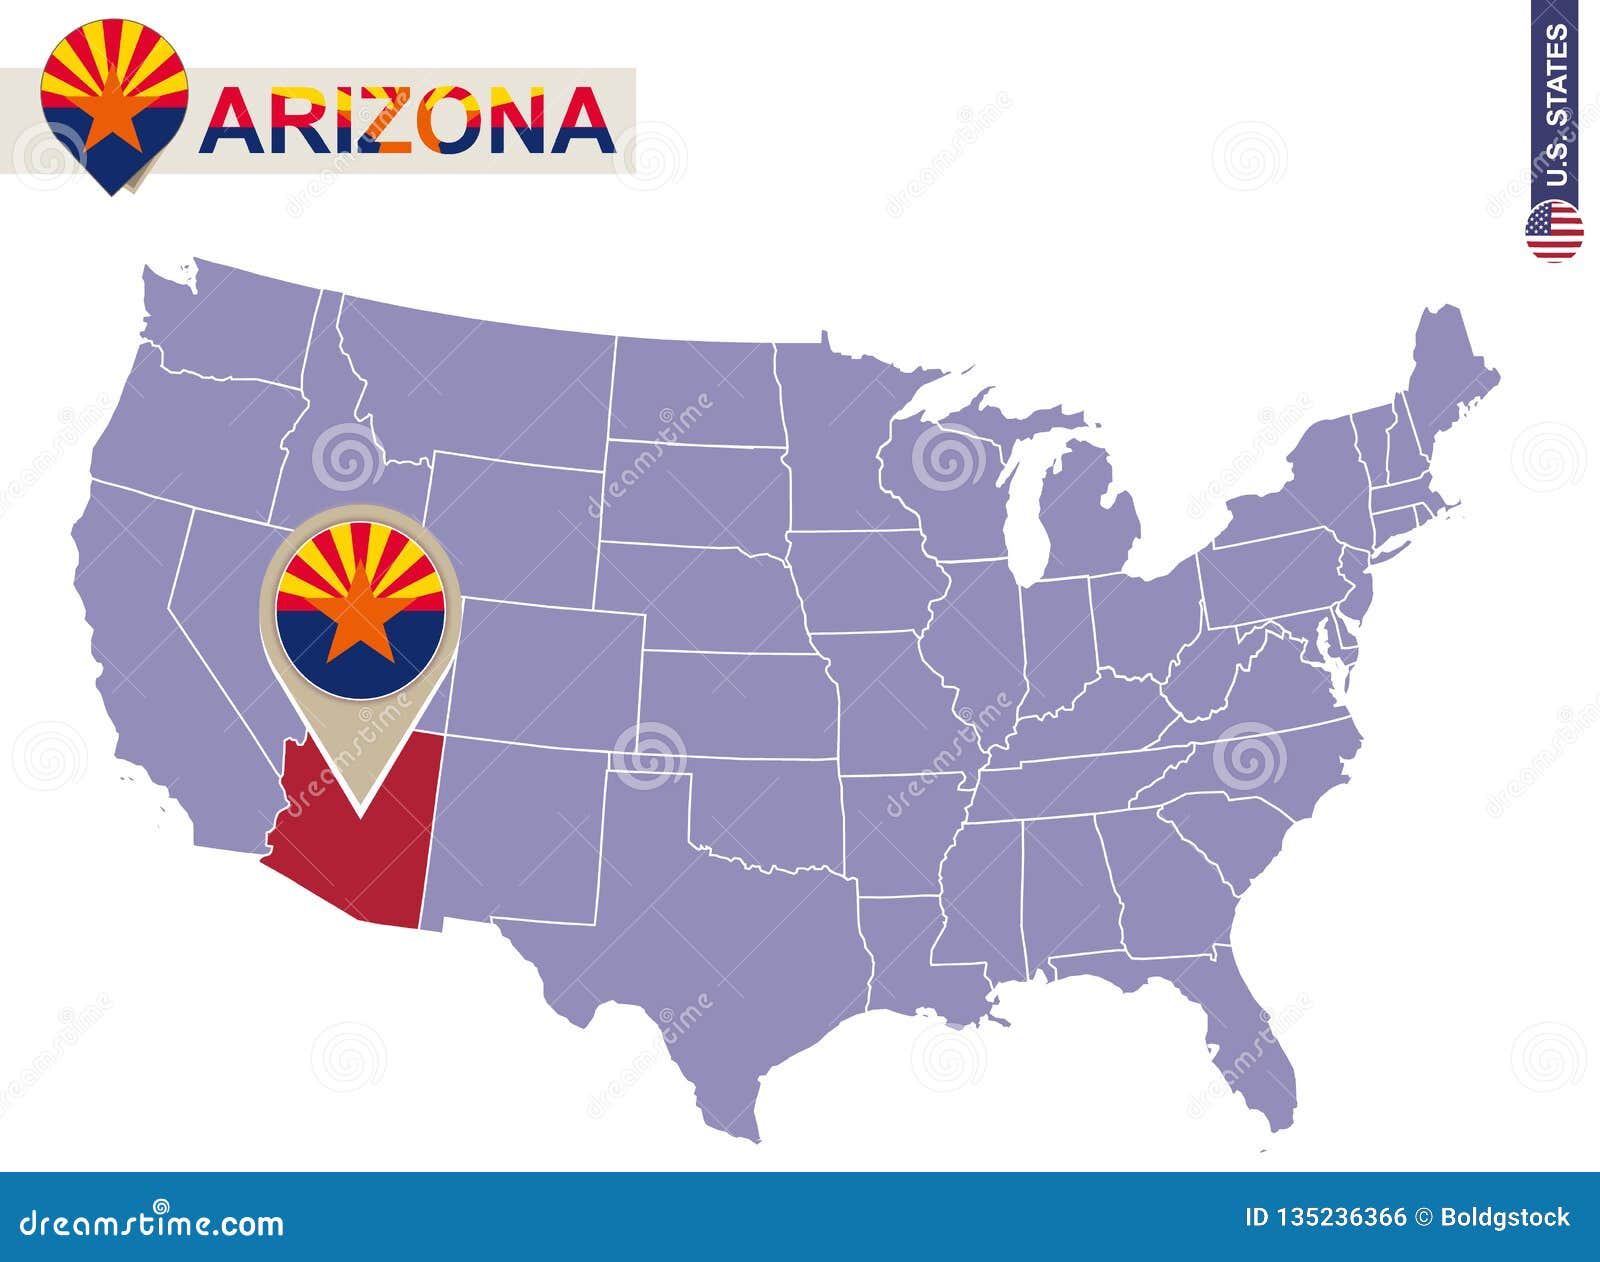 Arizona State On Usa Map Arizona Flag And Map Stock Vector